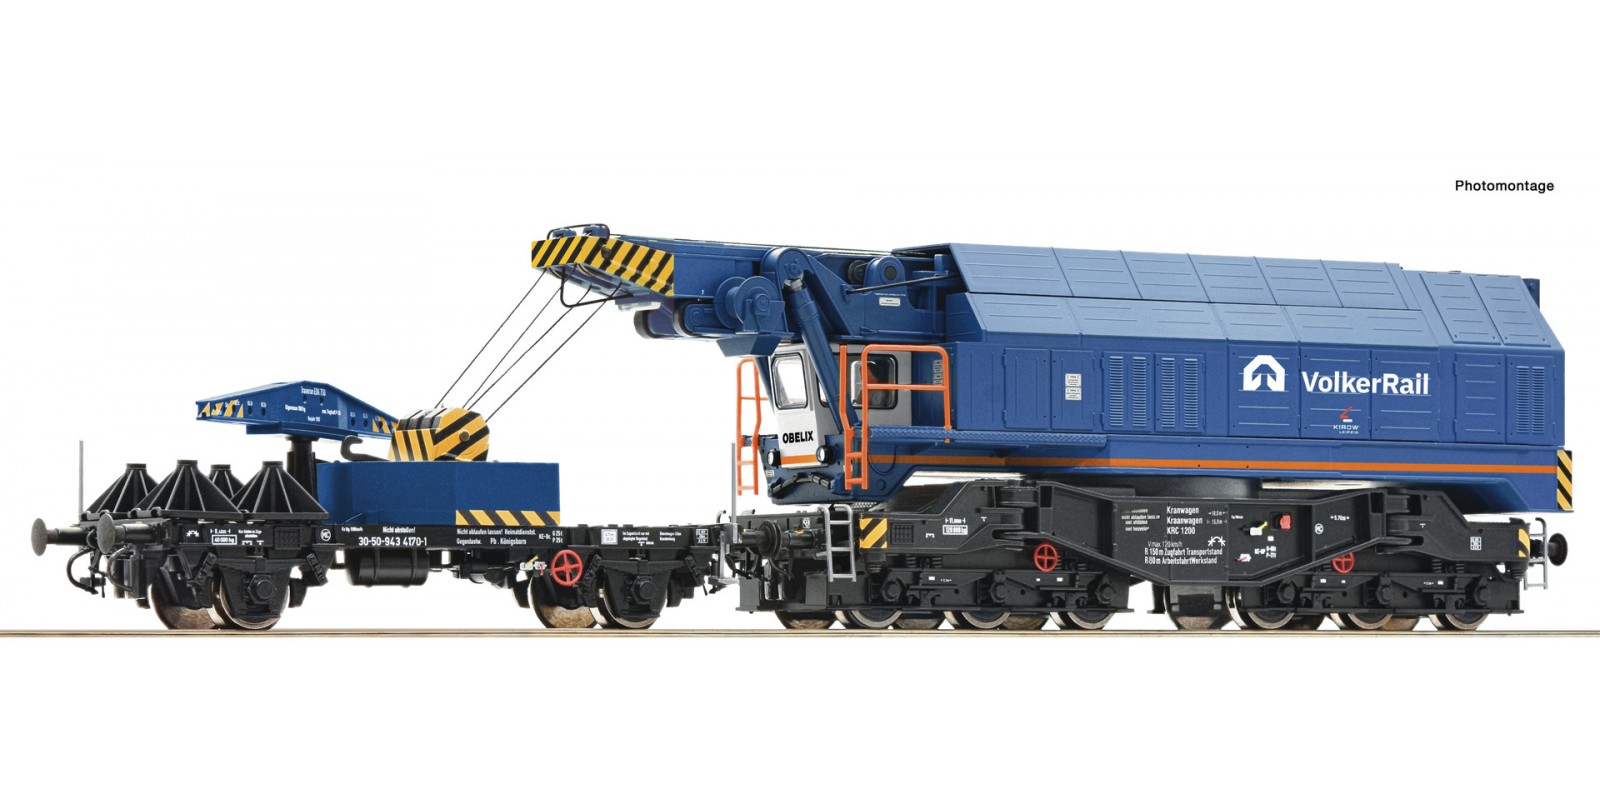 RO7320023 Digital railway slewing crane, Volkerrail